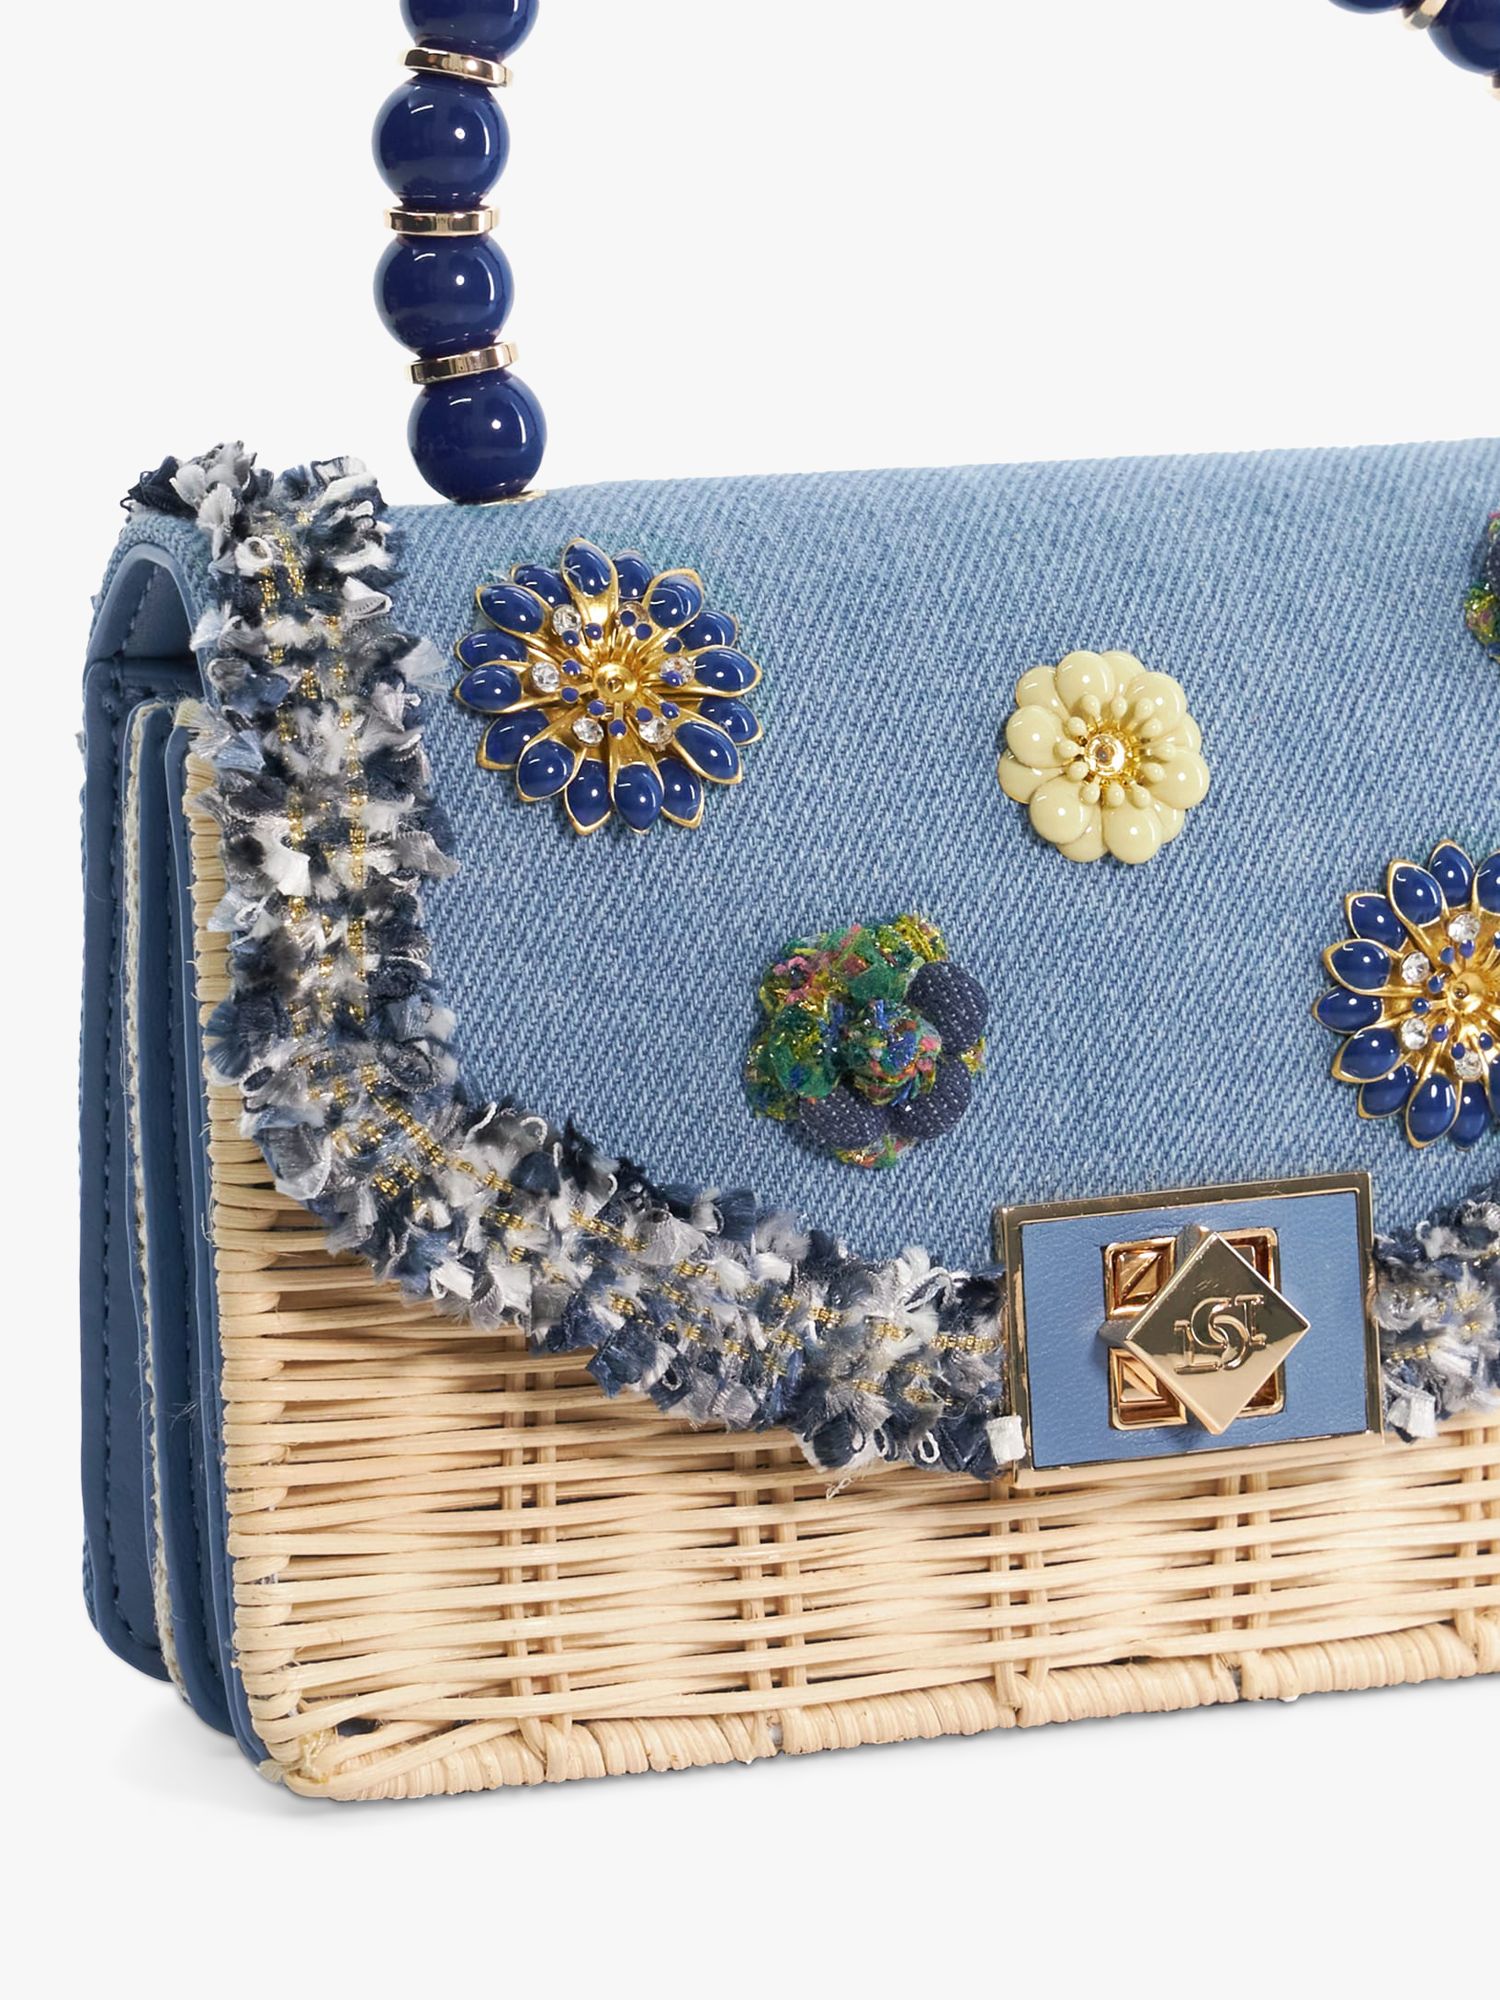 Buy Dune Blooms Floral Denim Handbag, Blue/Multi Online at johnlewis.com